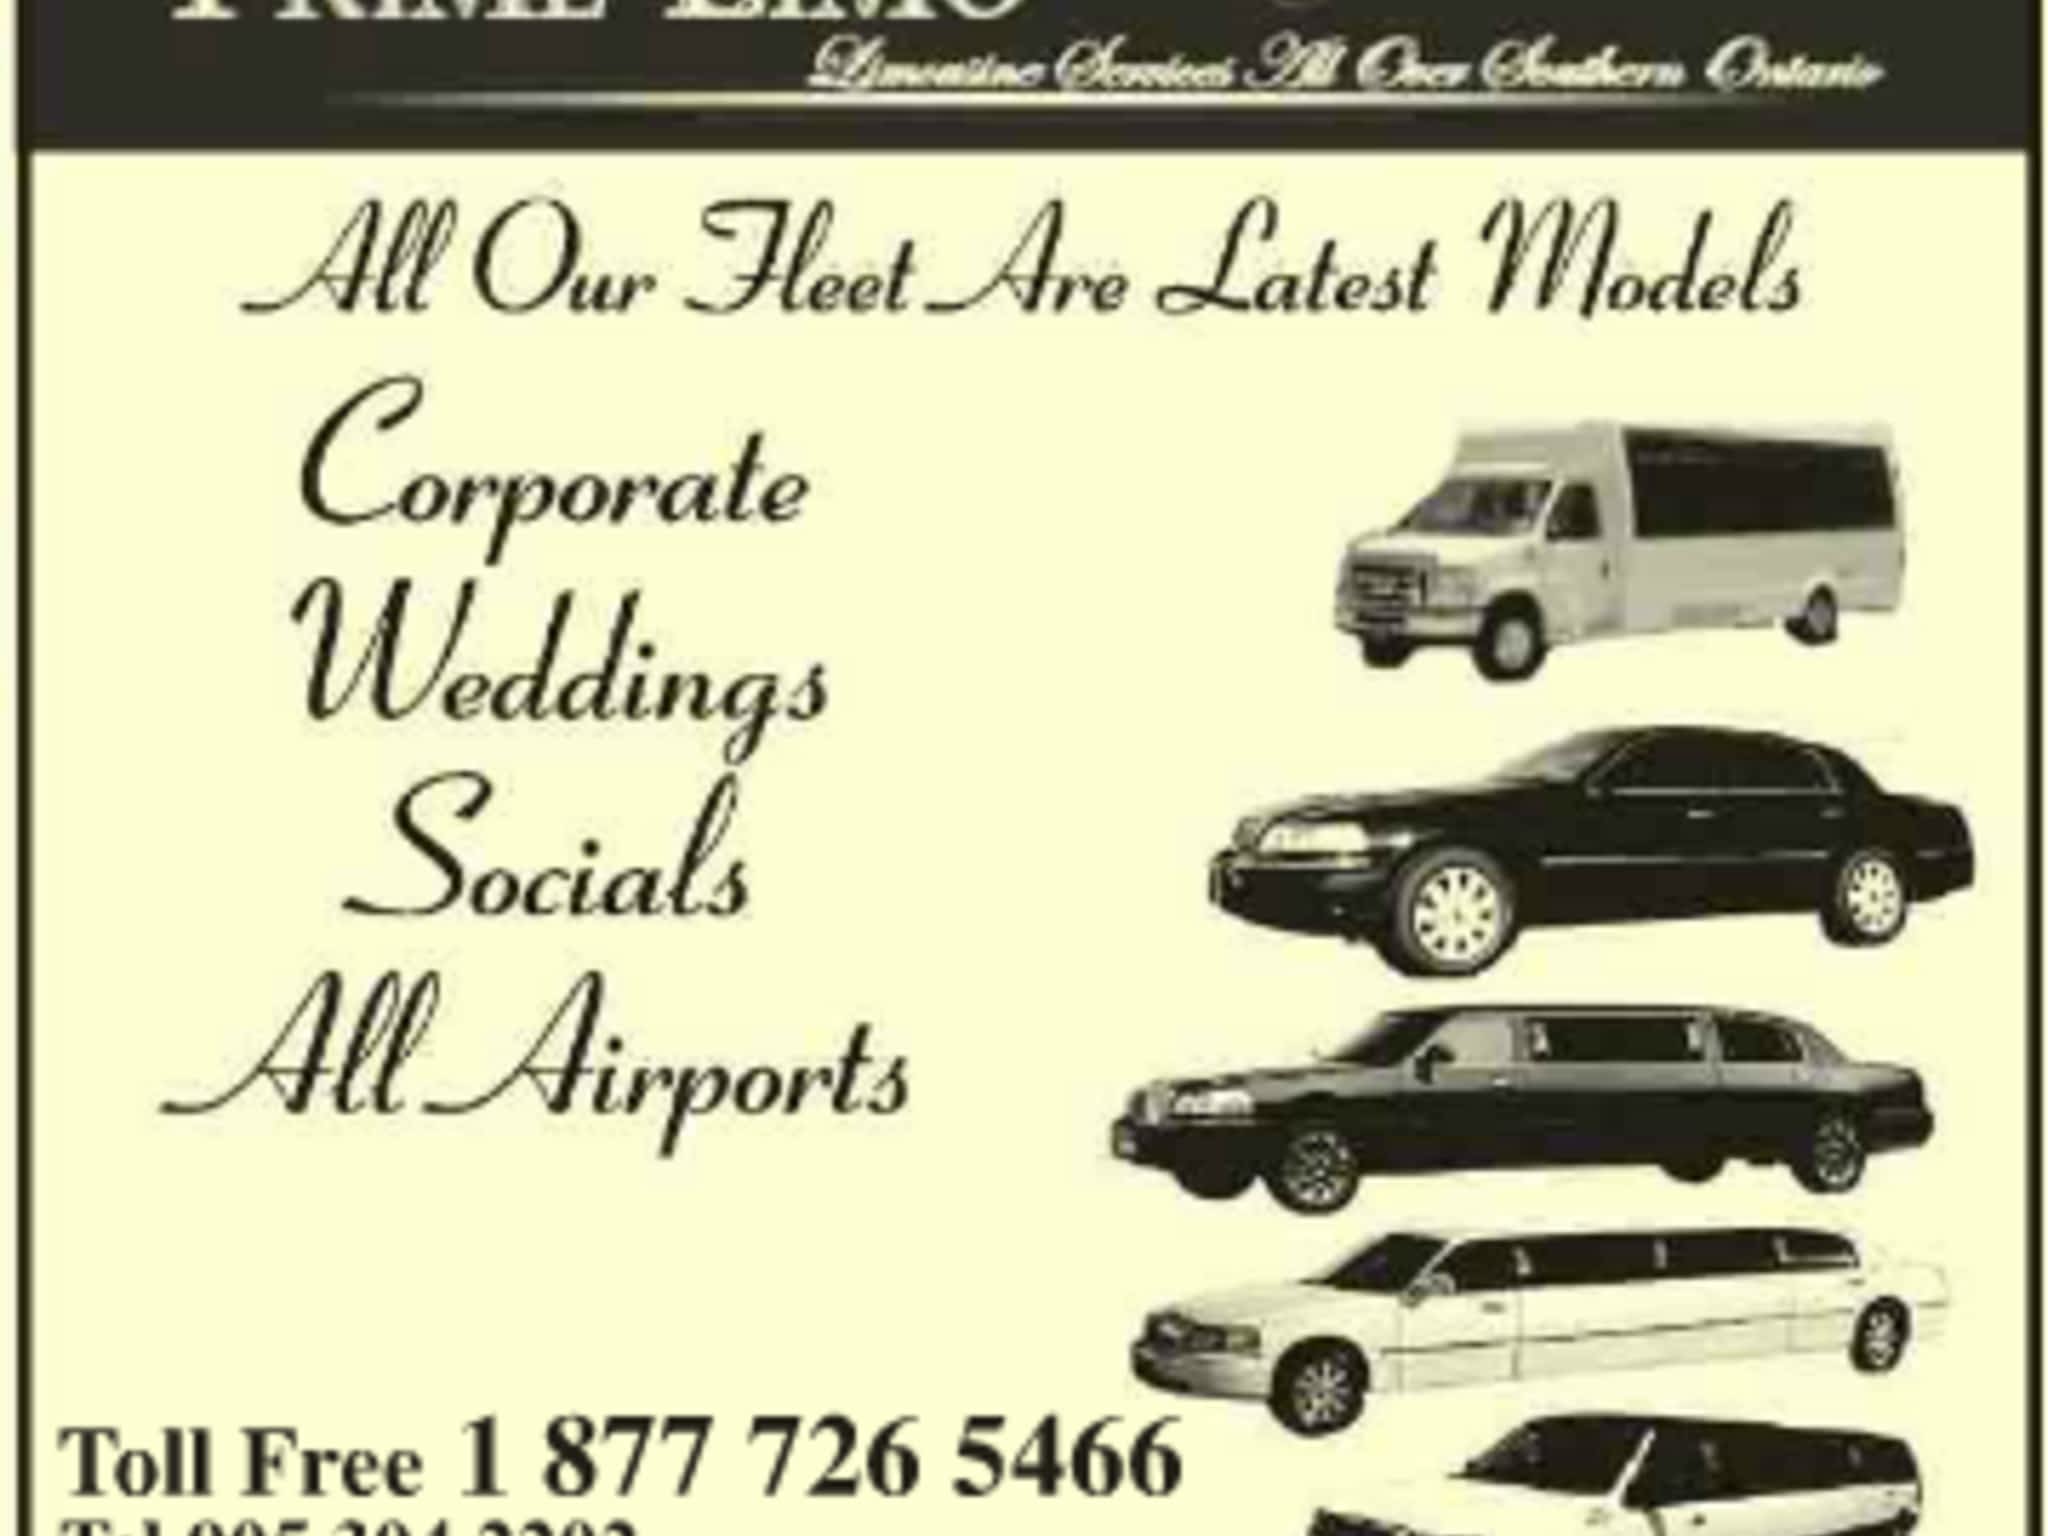 photo Prime Limousine Services Inc